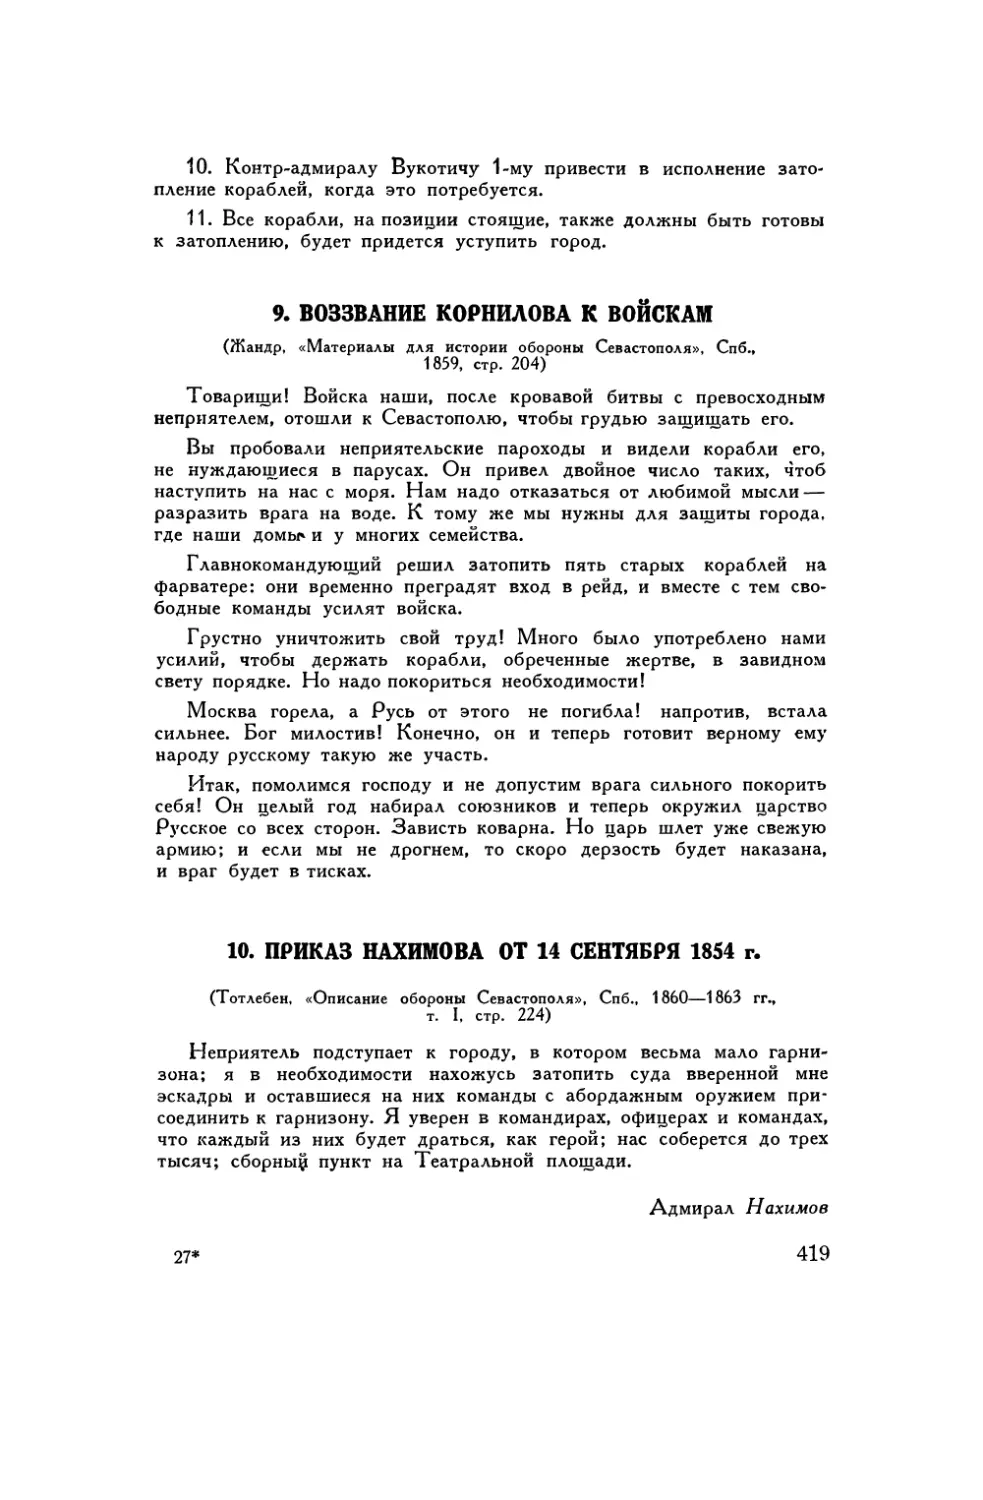 9. Воззвание Корнилова к войскам
10. Приказ Нахимова от 14 сентября 1854 г.